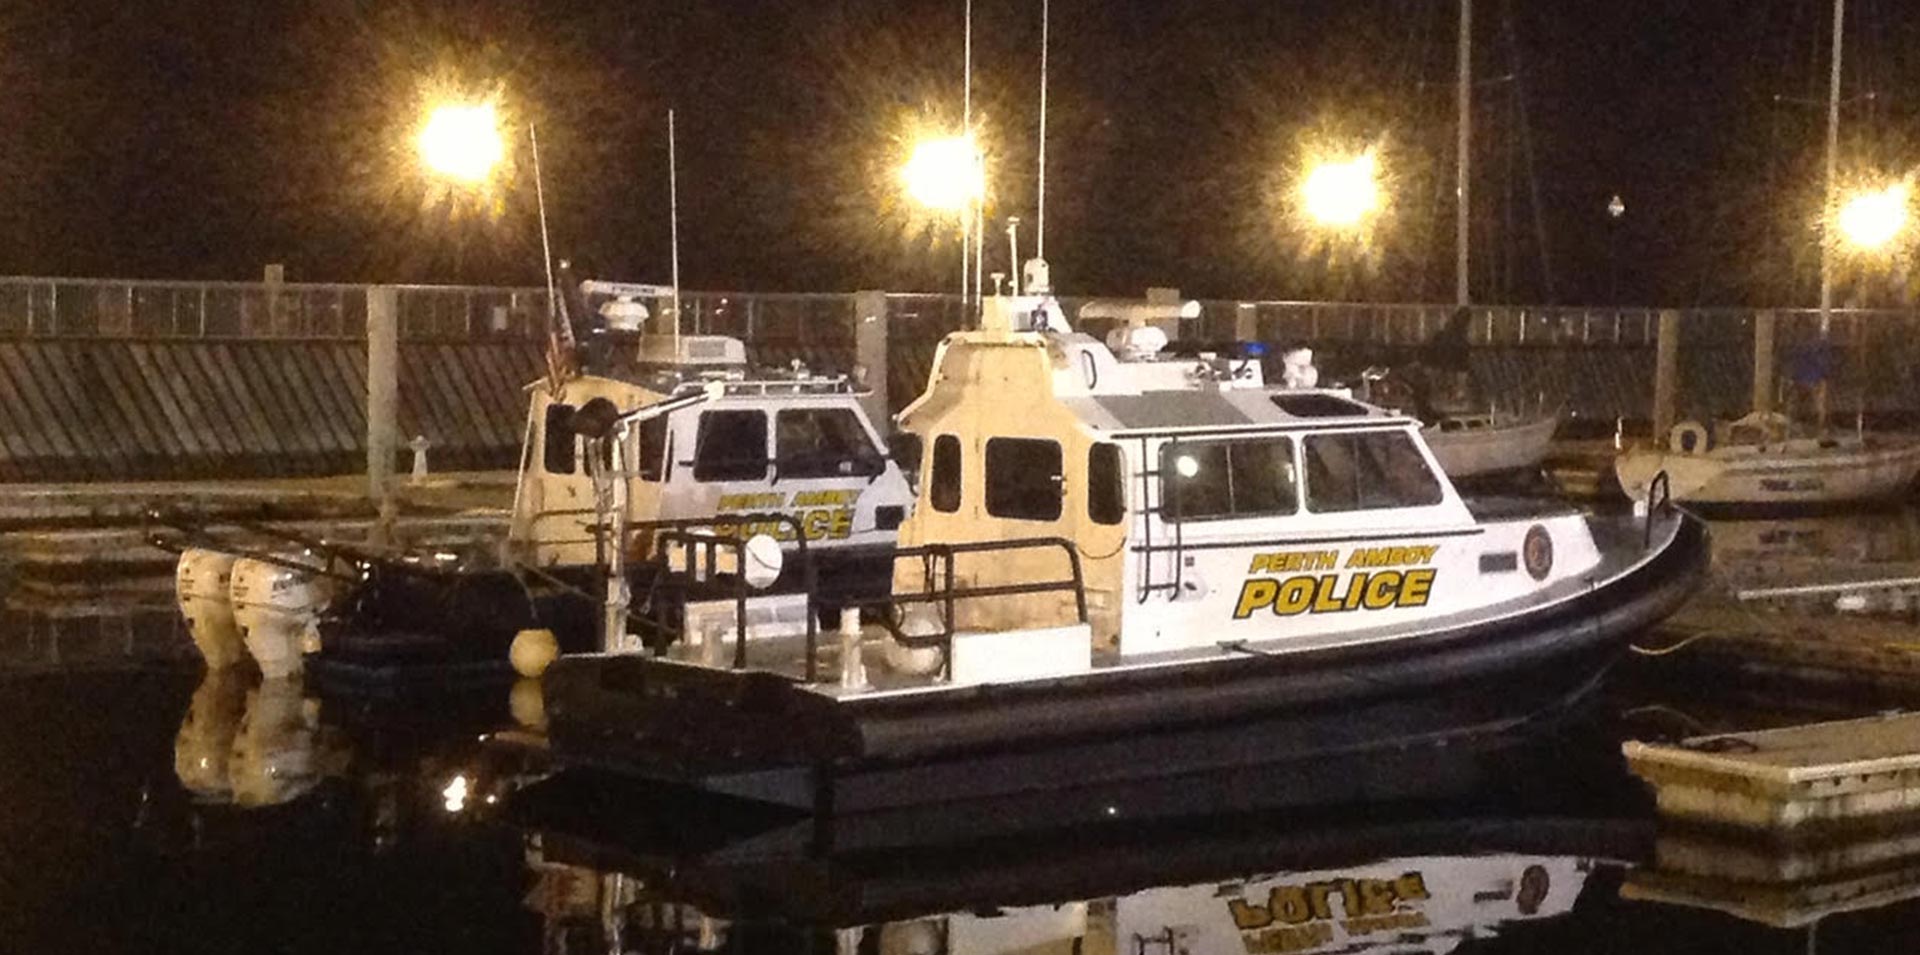 Law Enforcement | Perth Amboy Police